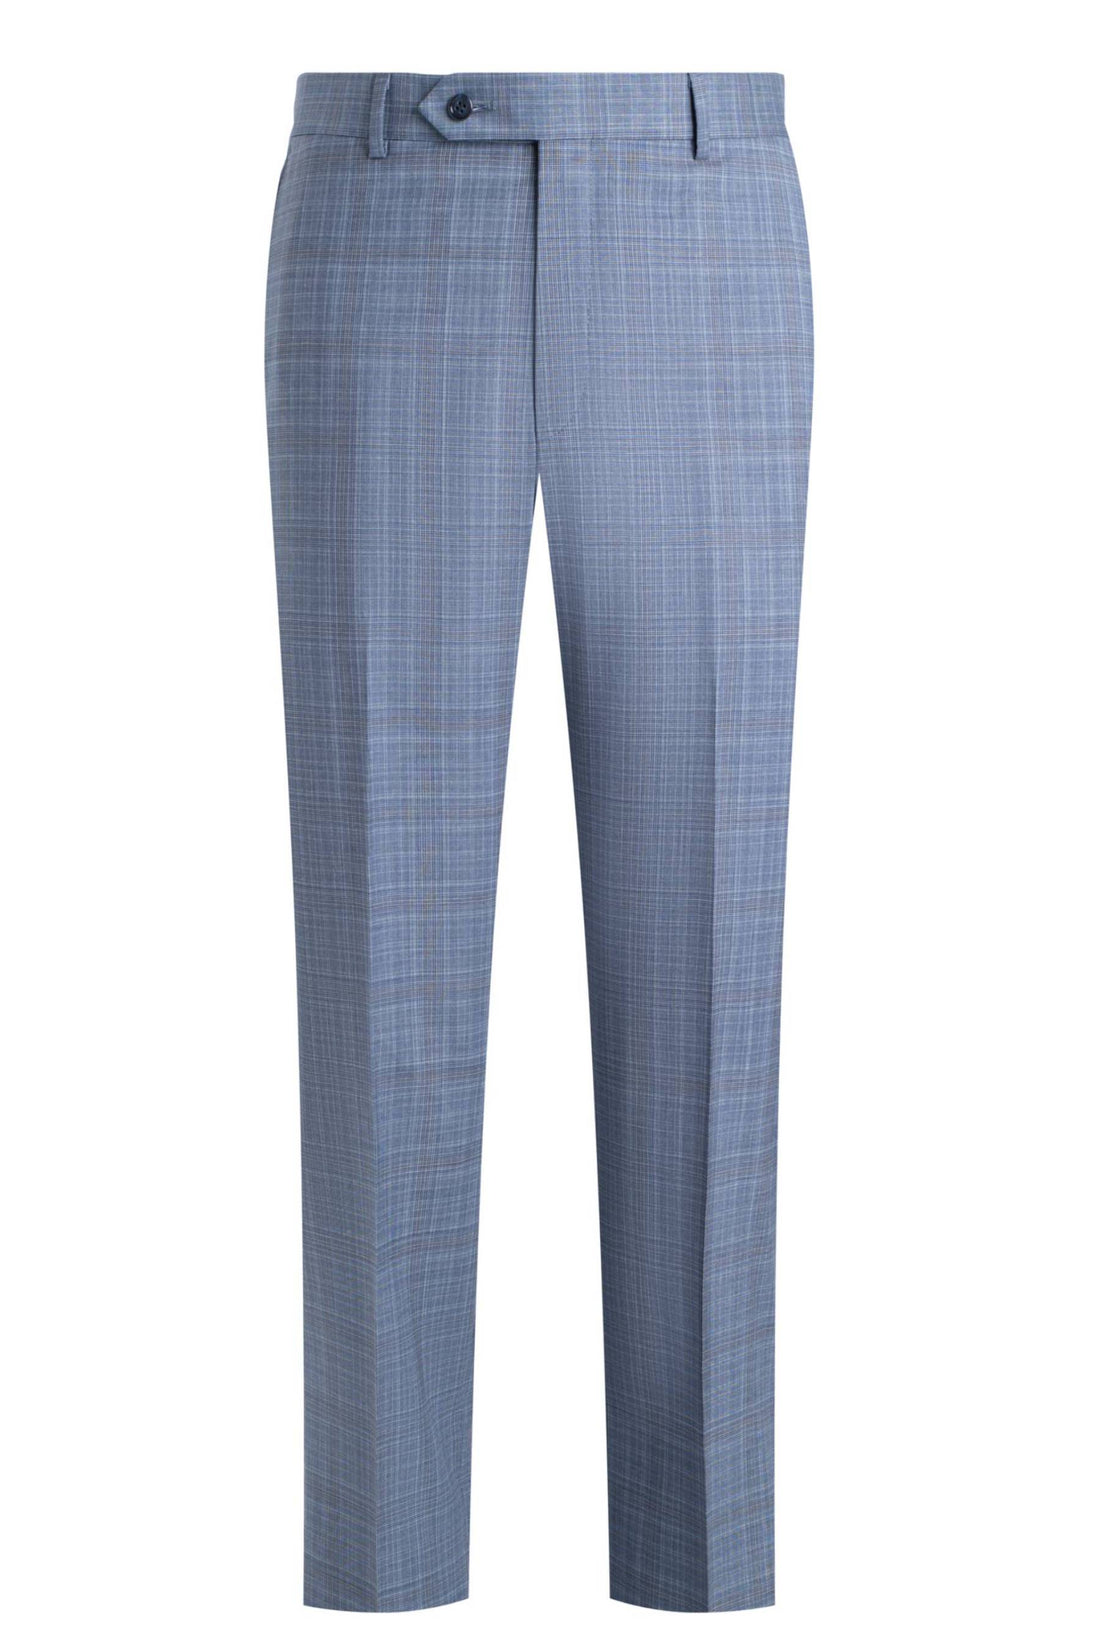 Samuelsohn Slate Blue Plaid Soft Suit Front Pant